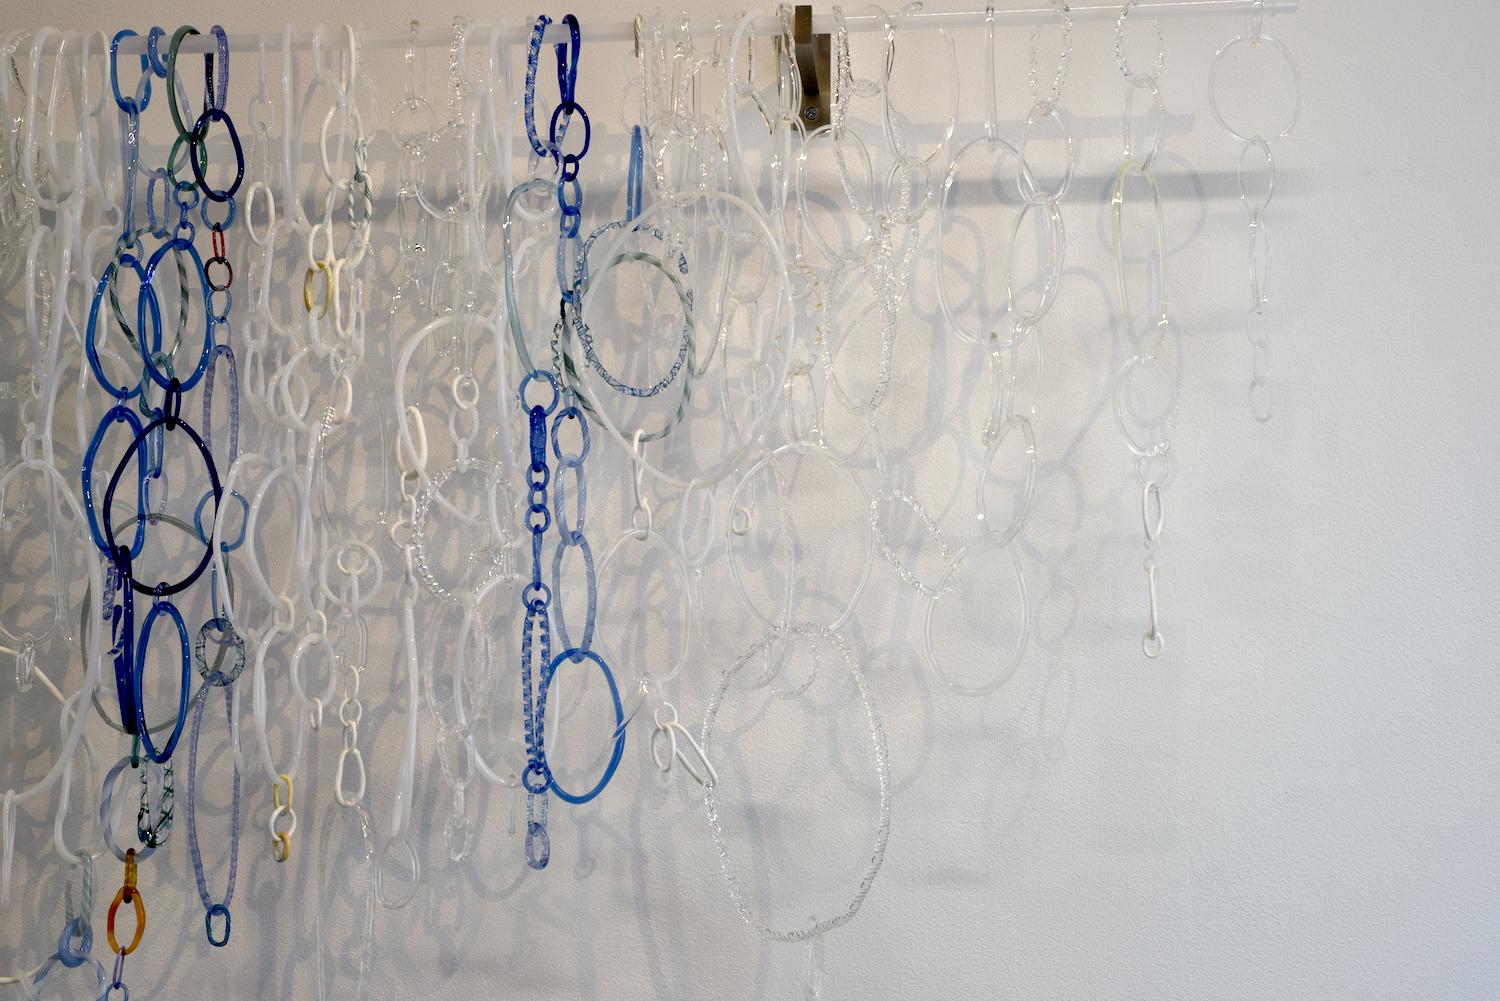 Frozen I, Hängeskulptur, Fackelglas, Fackelbearbeitetes Glas, weiße, blaue, grüne Schleifen (Zeitgenössisch), Sculpture, von David Licata